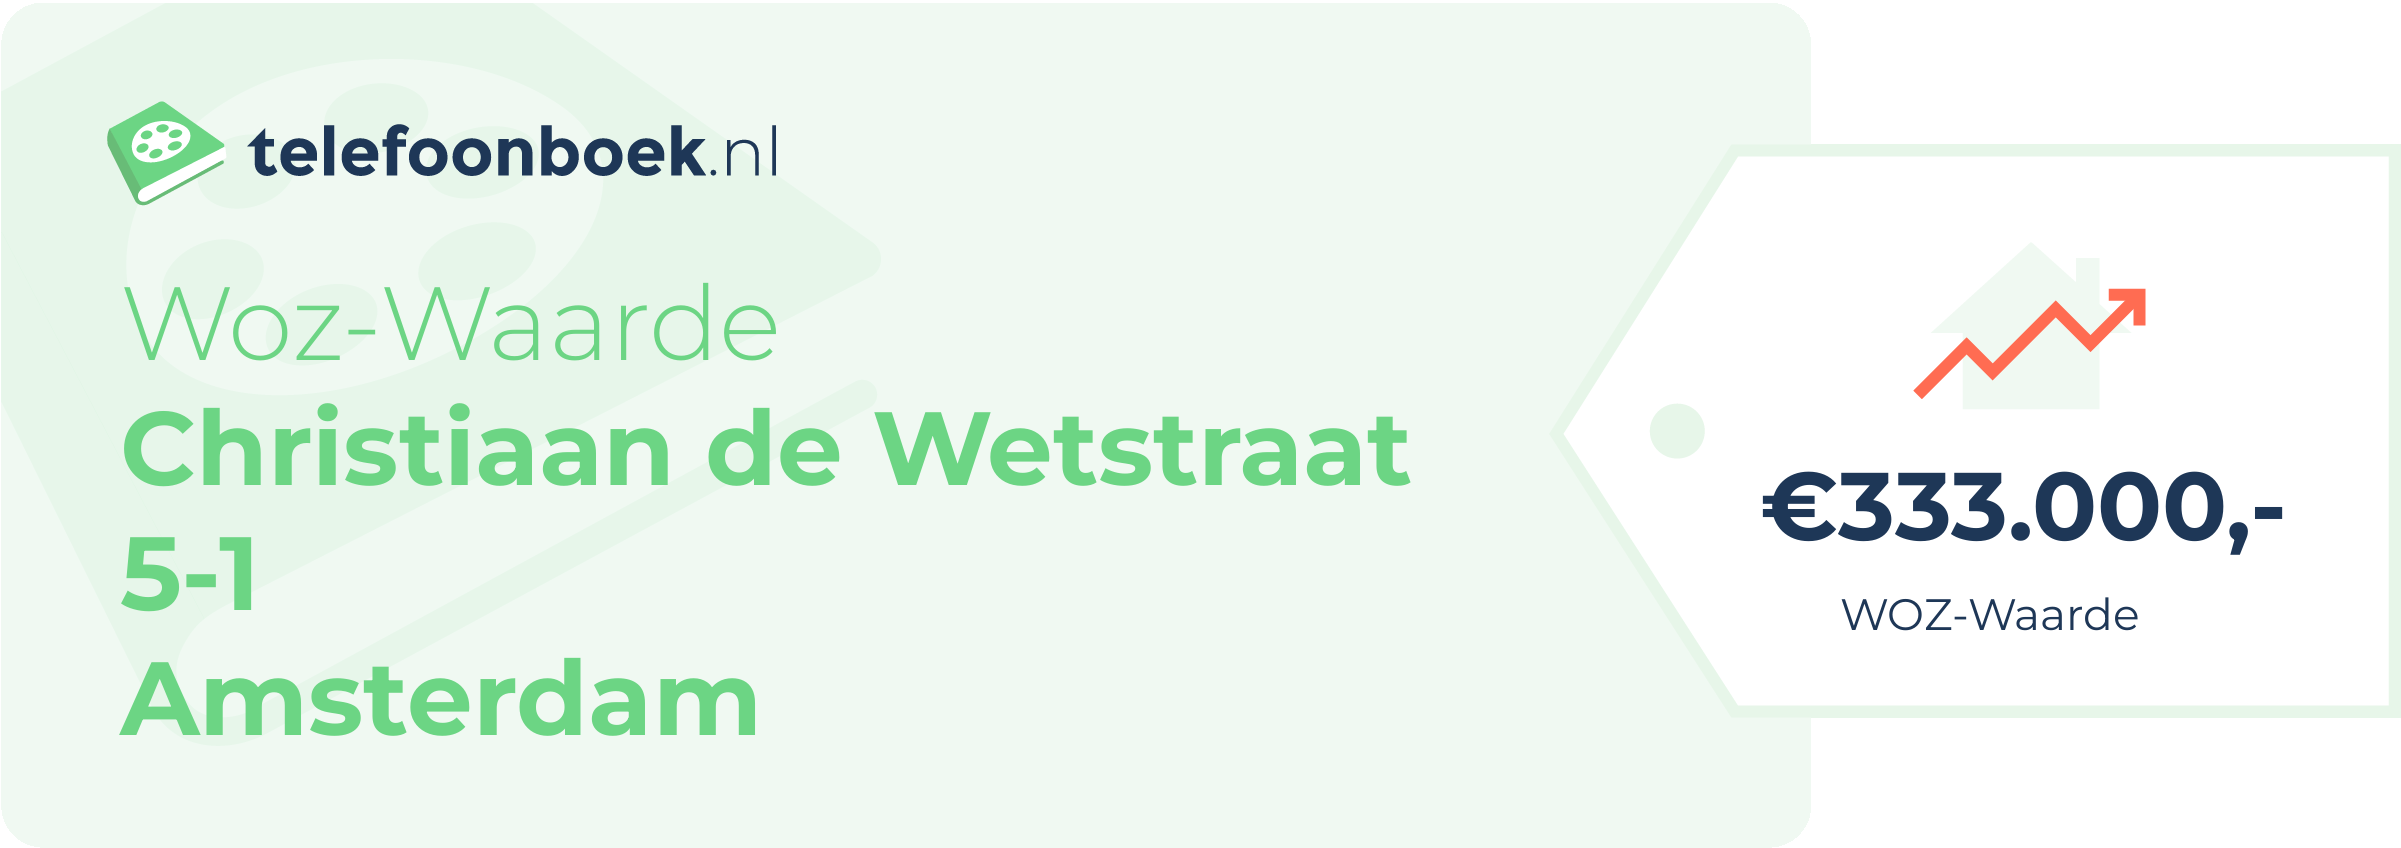 WOZ-waarde Christiaan De Wetstraat 5-1 Amsterdam